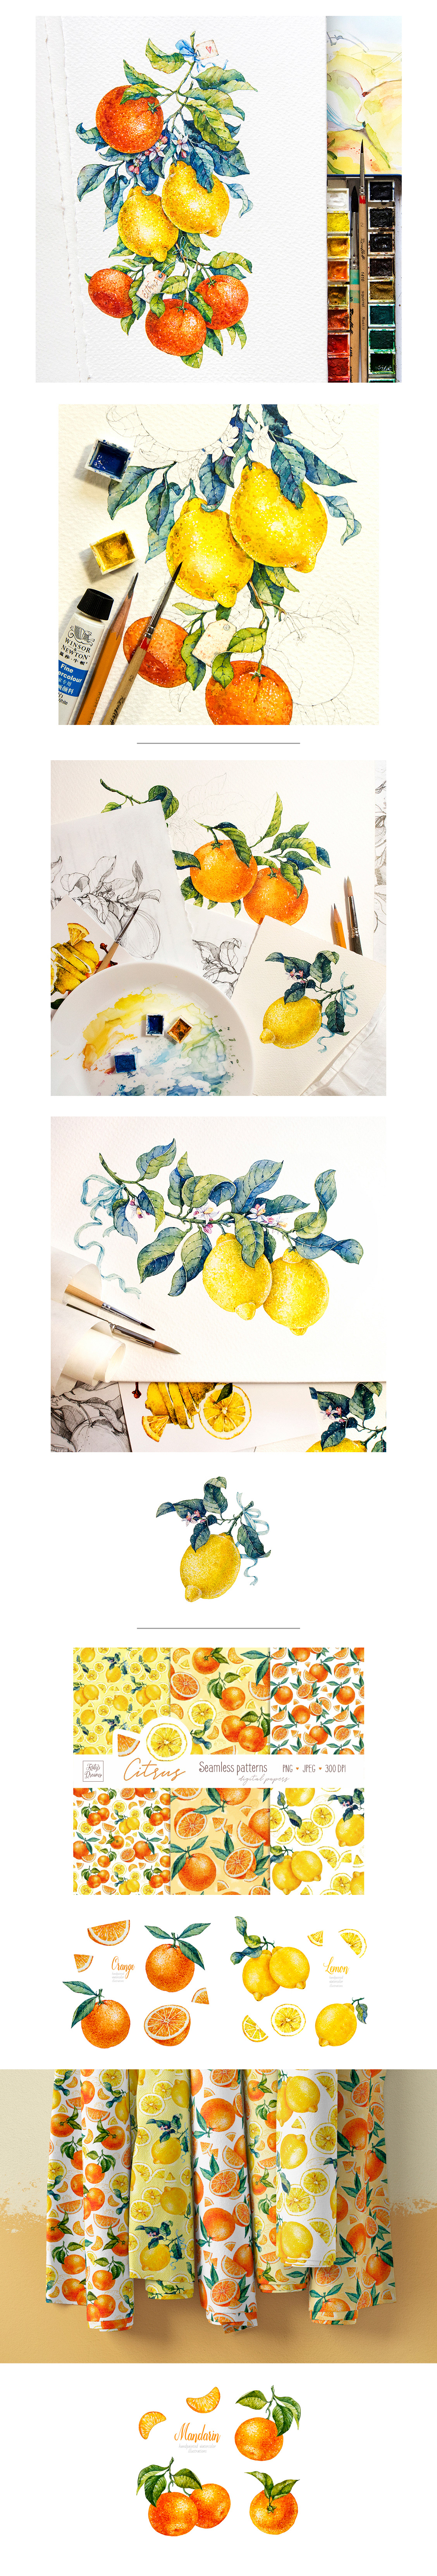 watercolor citrus mandarin orange lemon Fruit Food  botanical aquarelle floral